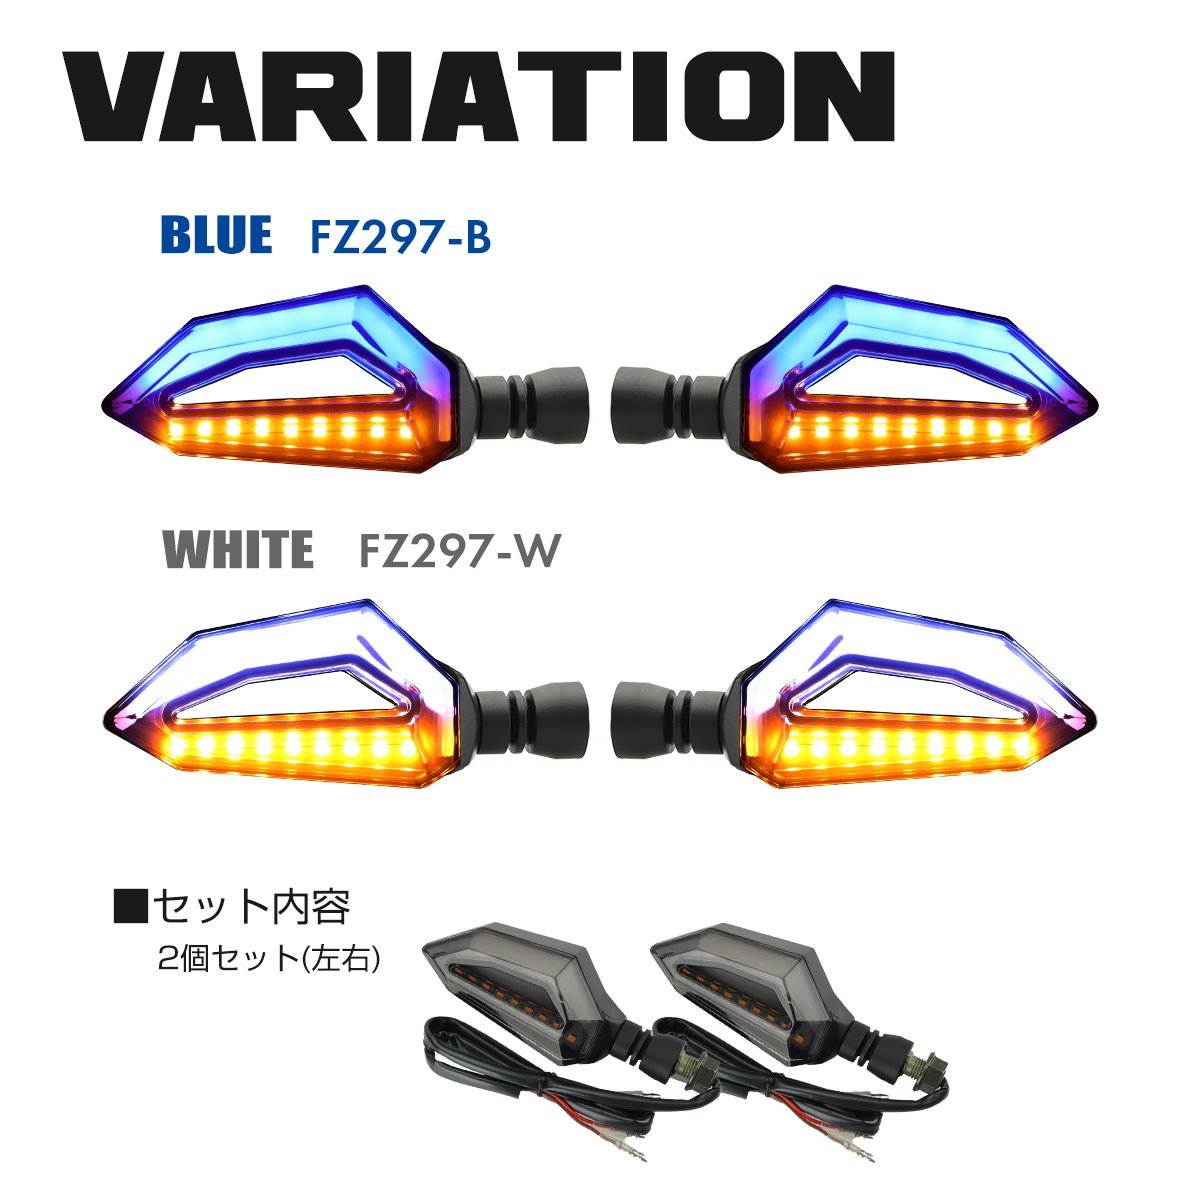 バイク汎用 LED ウインカー ブルー DRL マーカーランプ付き ブレードボディタイプ ネジ部 M10 左右セット FZ297-B_画像4